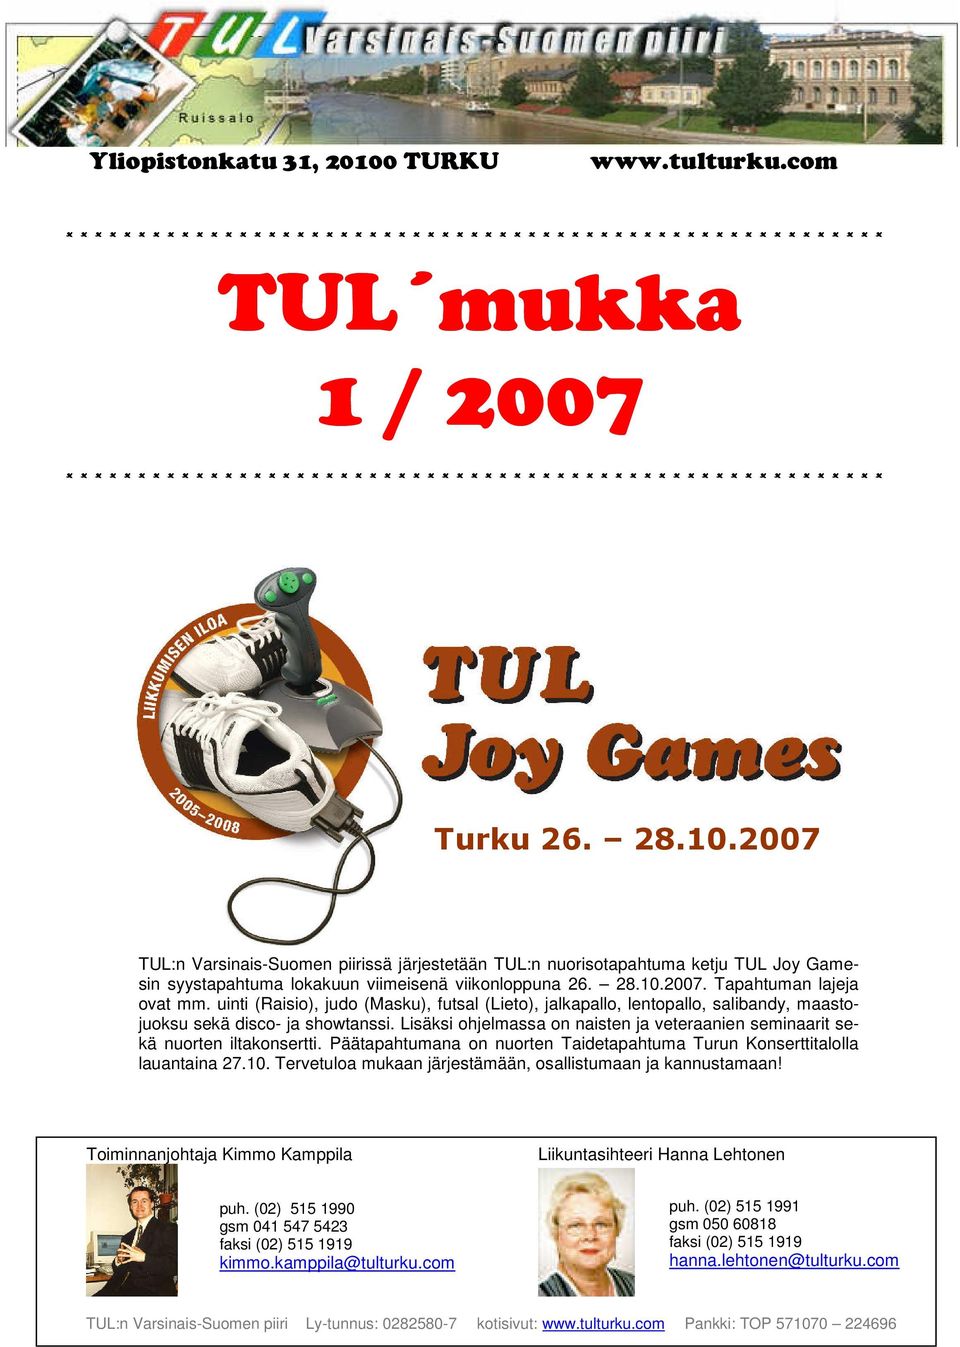 * * * * * * * * * * * * * * * * * * * * * * * * * * Turku 26. 28.10.